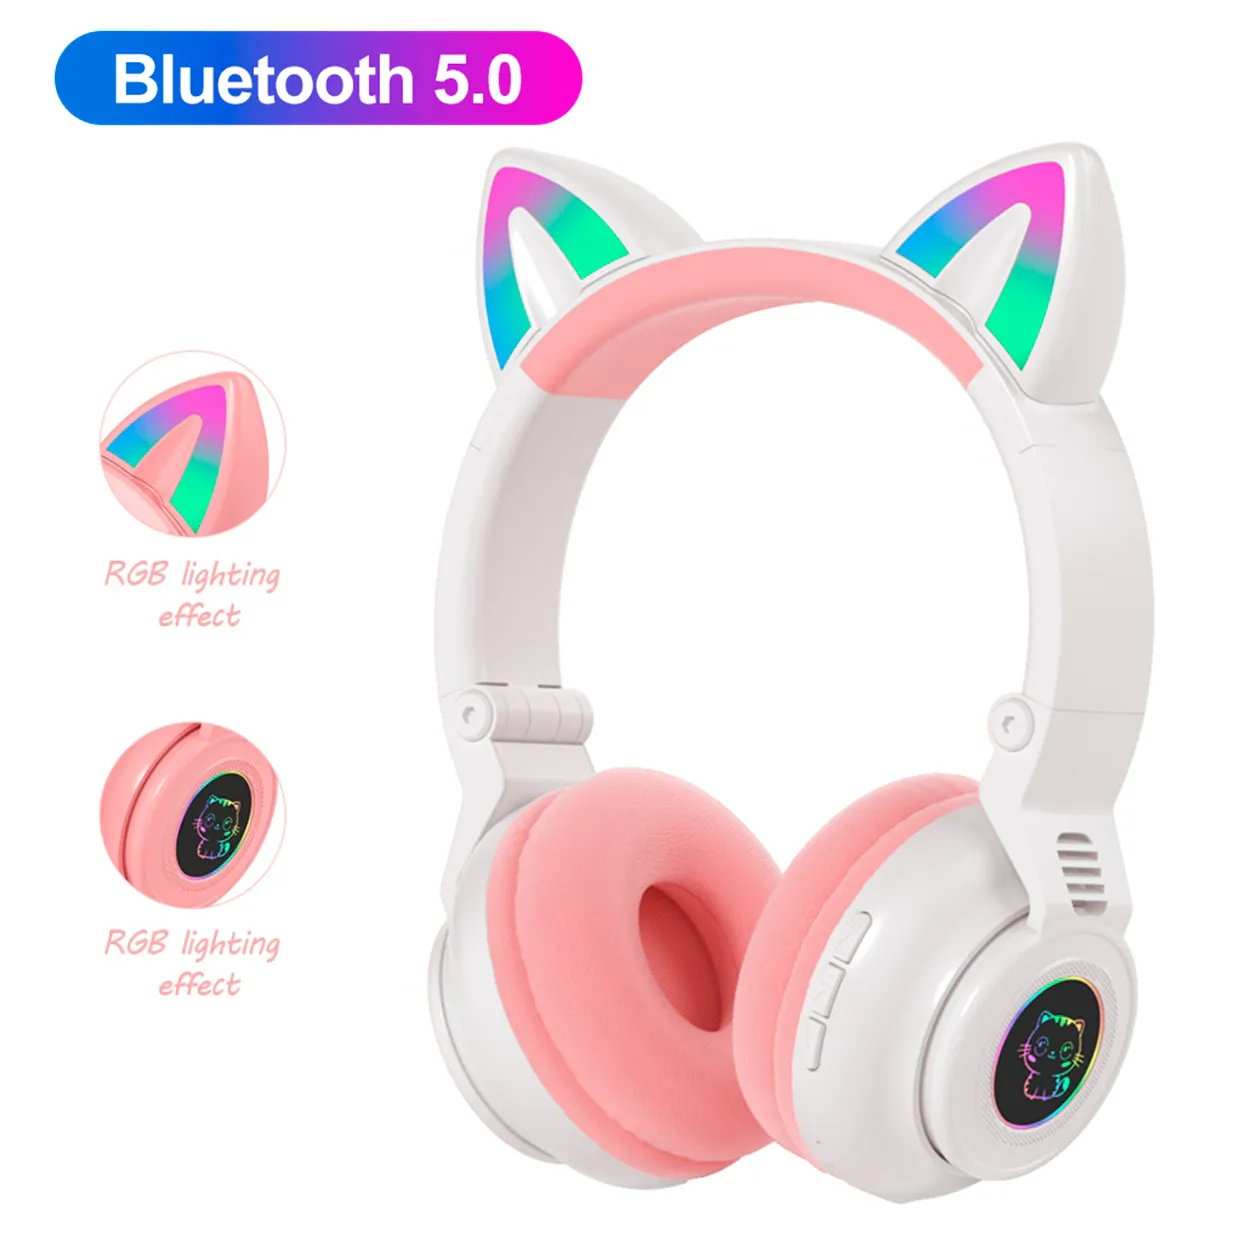 Cuffie con orecchio di gatto RGB Bluetooth 5.0 Cancellazione del rumore Adulti Ragazza bambini Supporto cuffie TF Card Radio FM con microfono telefono Cuffie da gioco PC